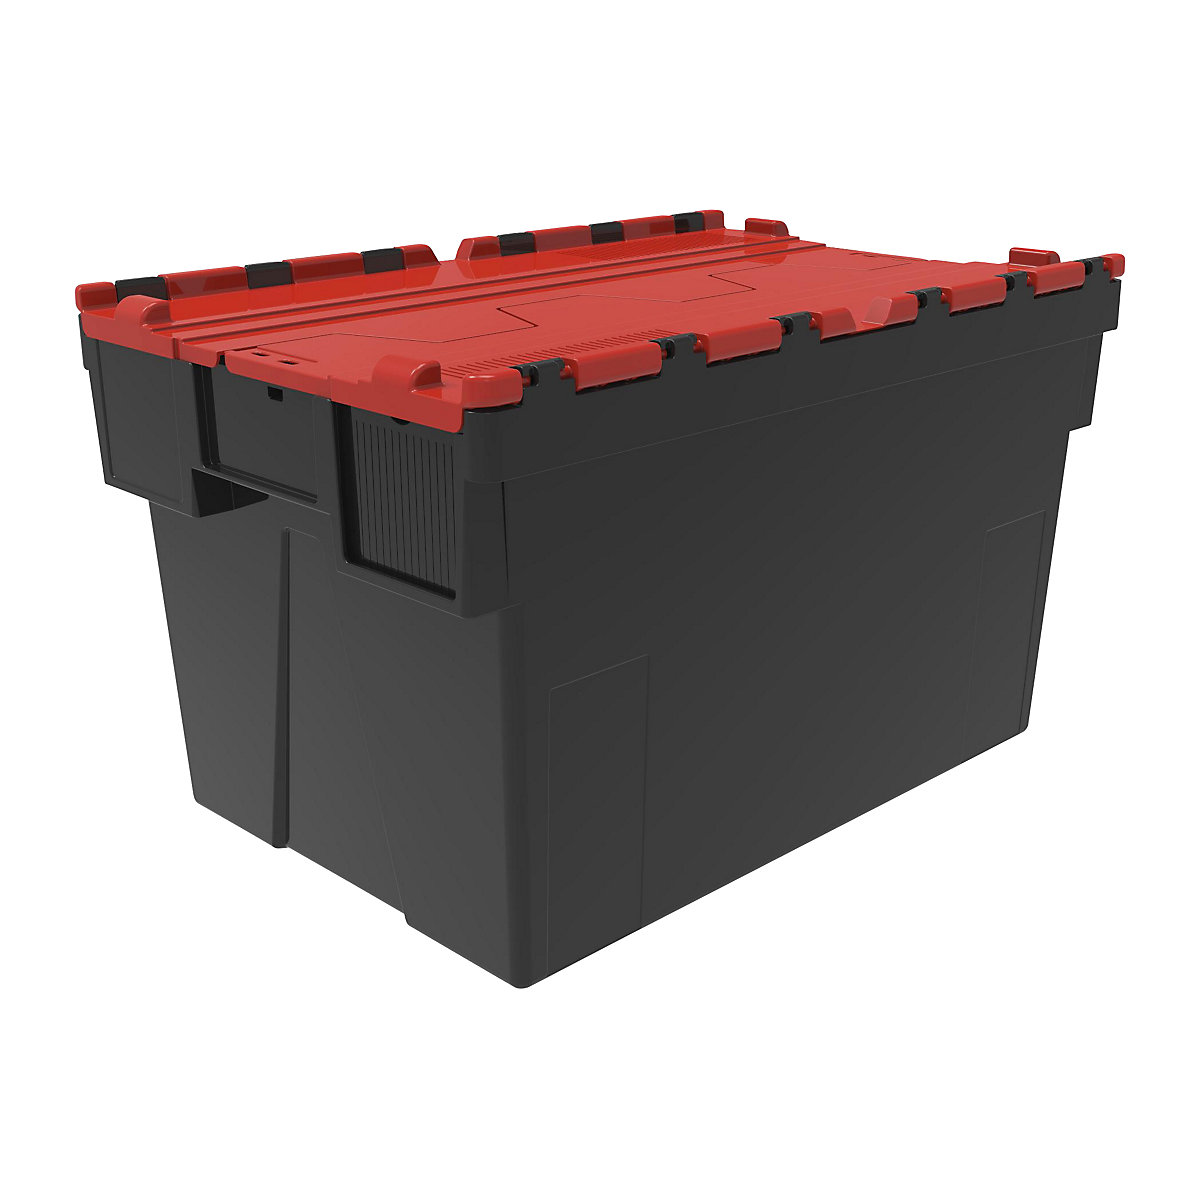 Recipiente empilhável e retornável, CxLxA 600 x 400 x 365 mm, embalagem de 5 unid., preto, tampa vermelha